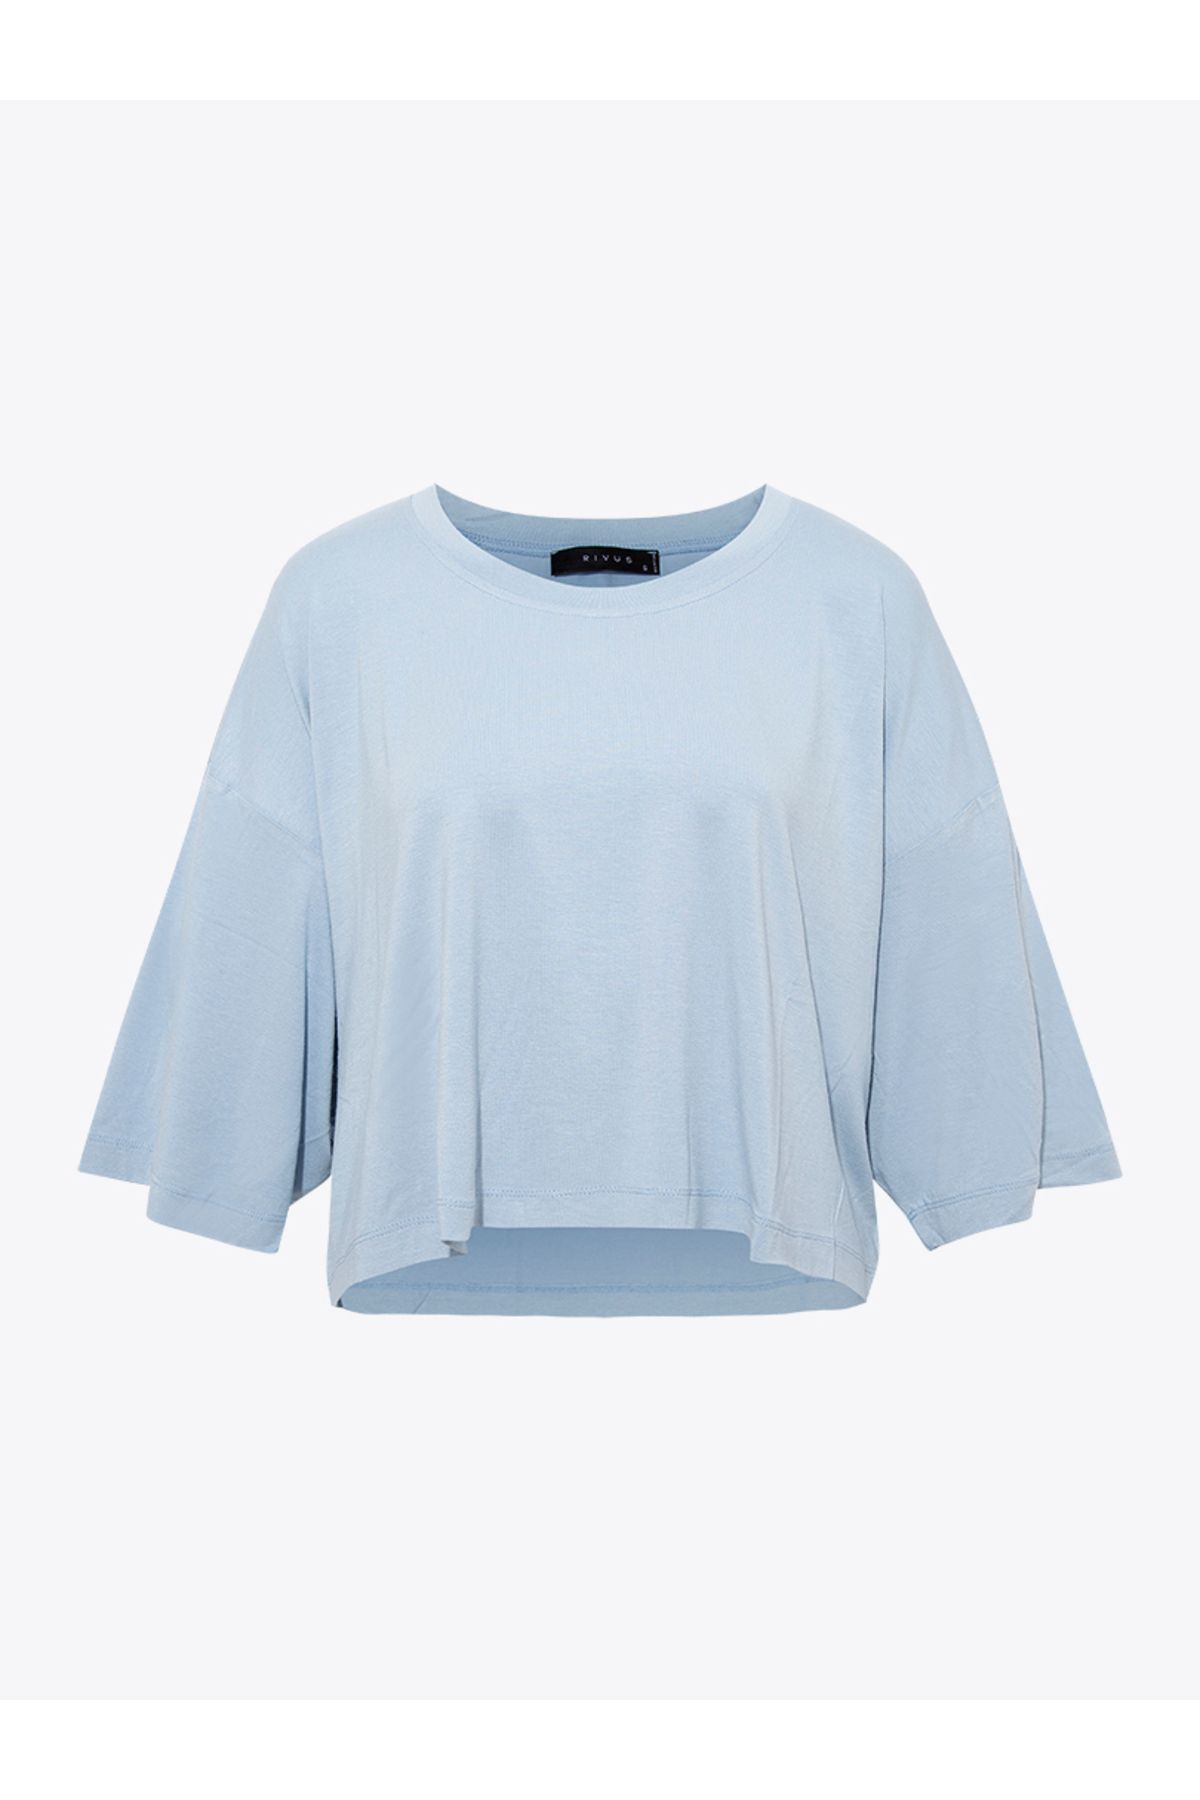 Rivus Oversize Crop T-shirt - Mavi